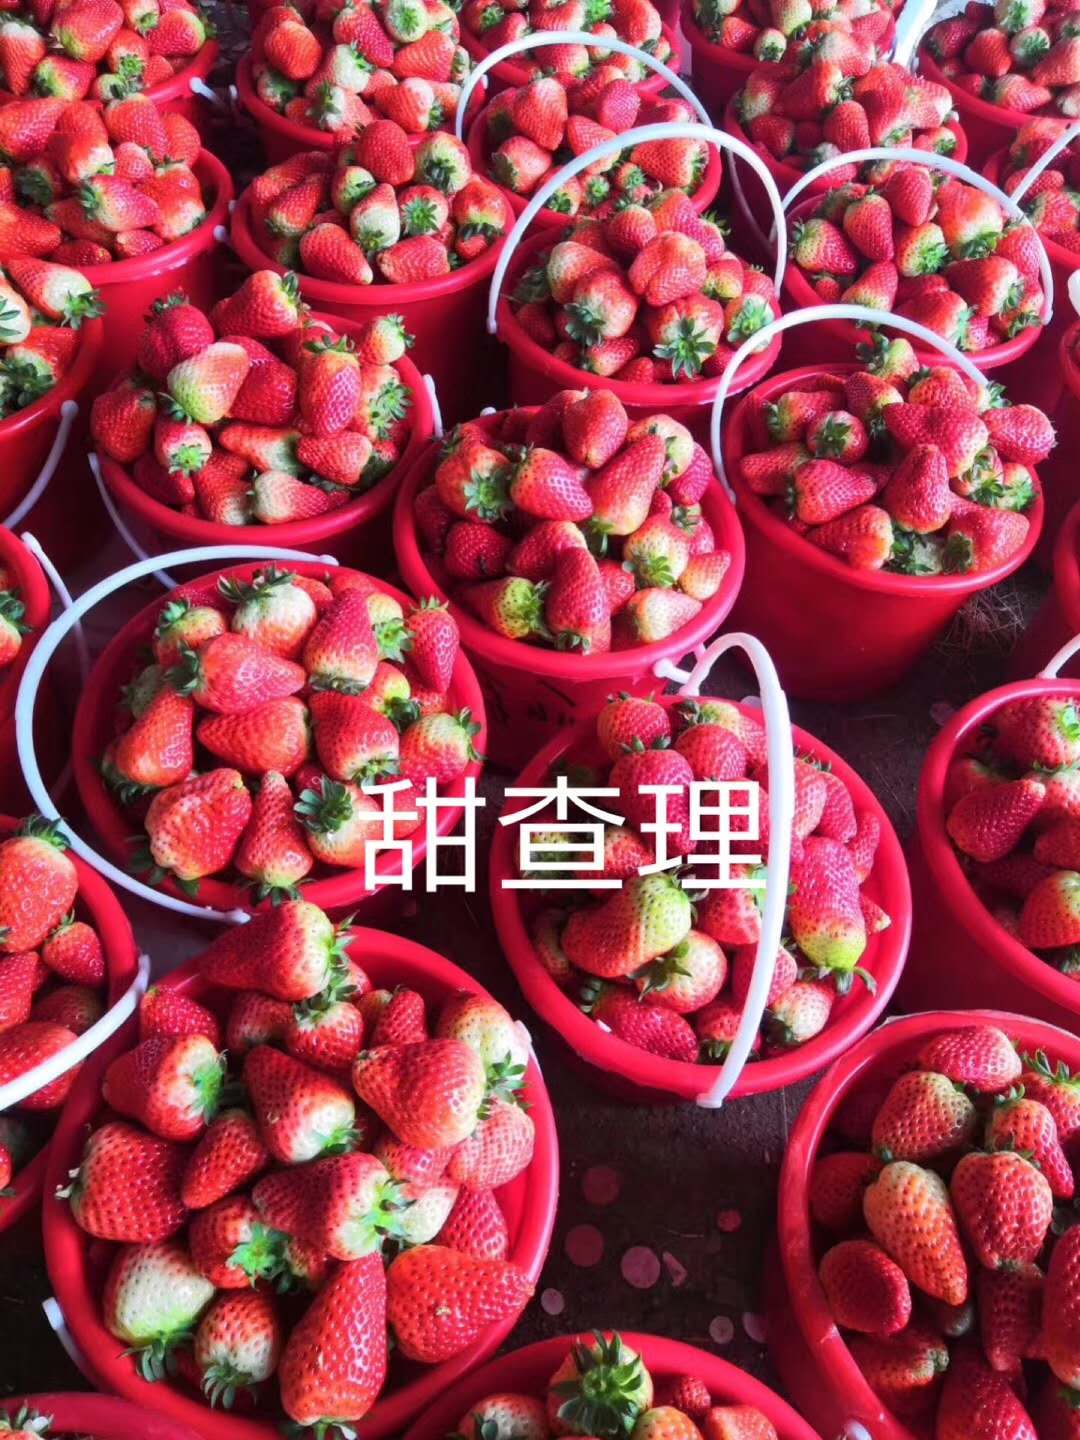 白雪小町草莓苗价格白雪小町草莓苗品种